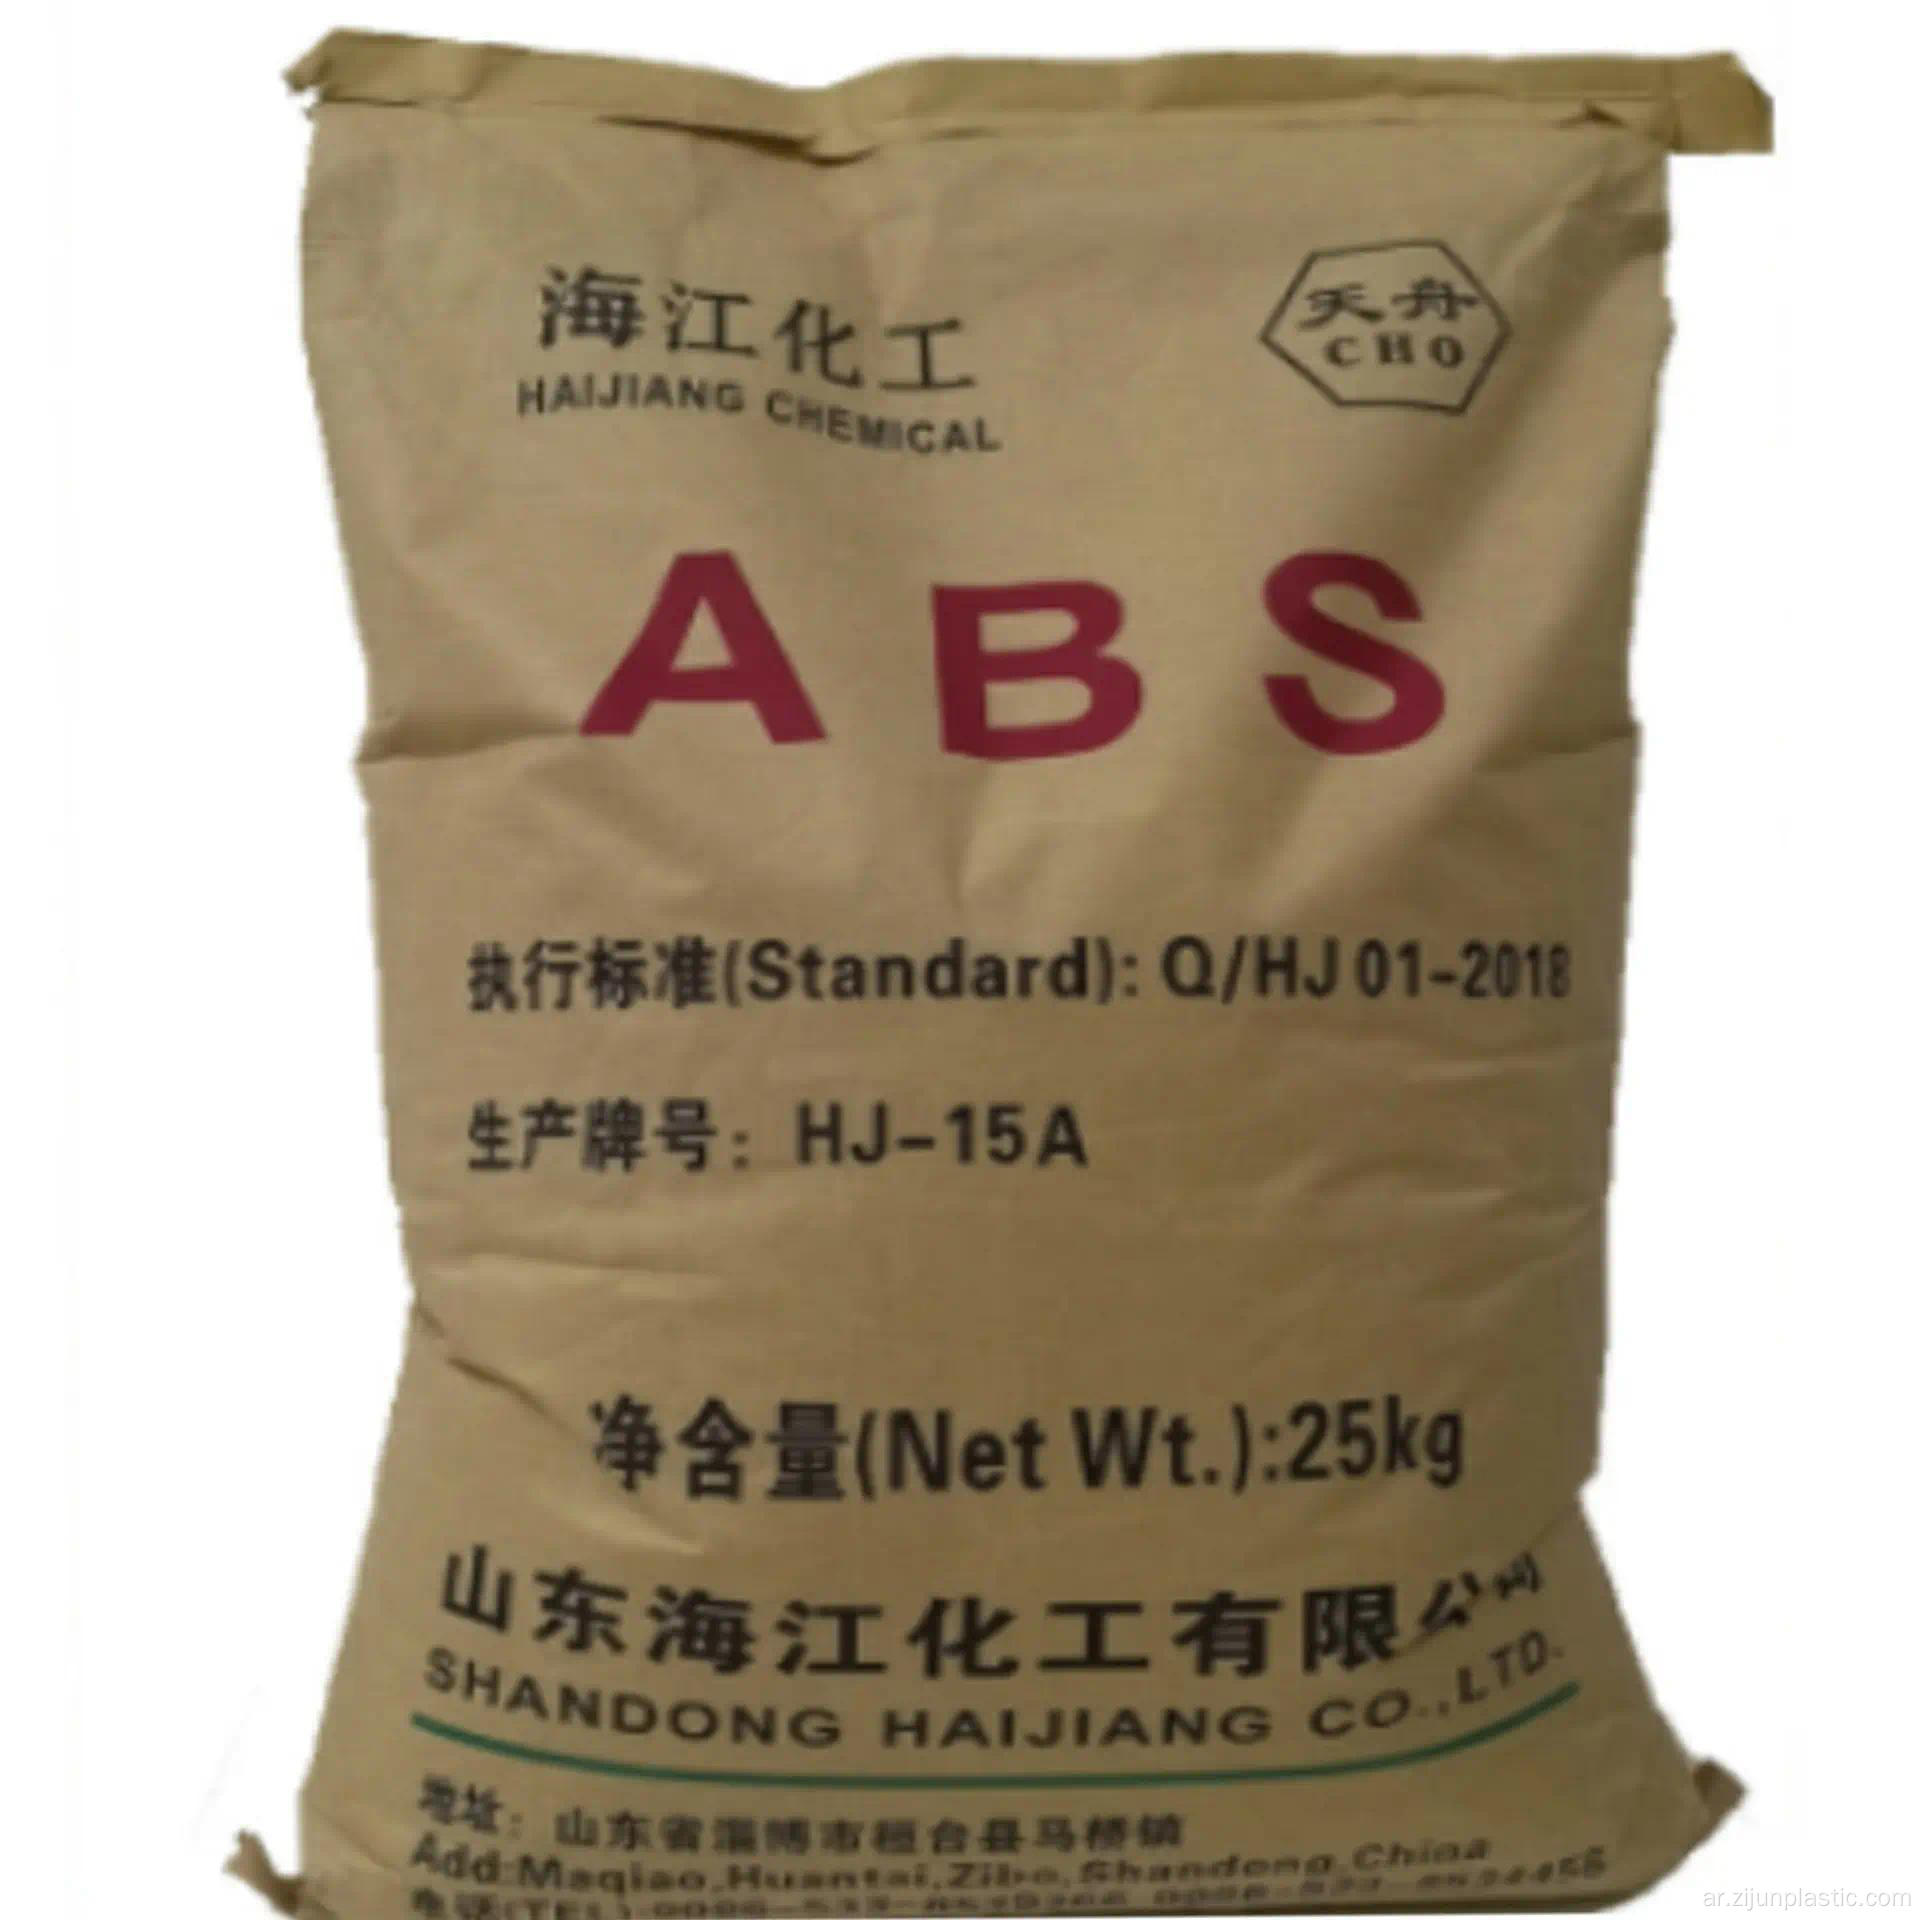 البلاستيك عالي التأثير الصف ABS Haijiang HJ15A